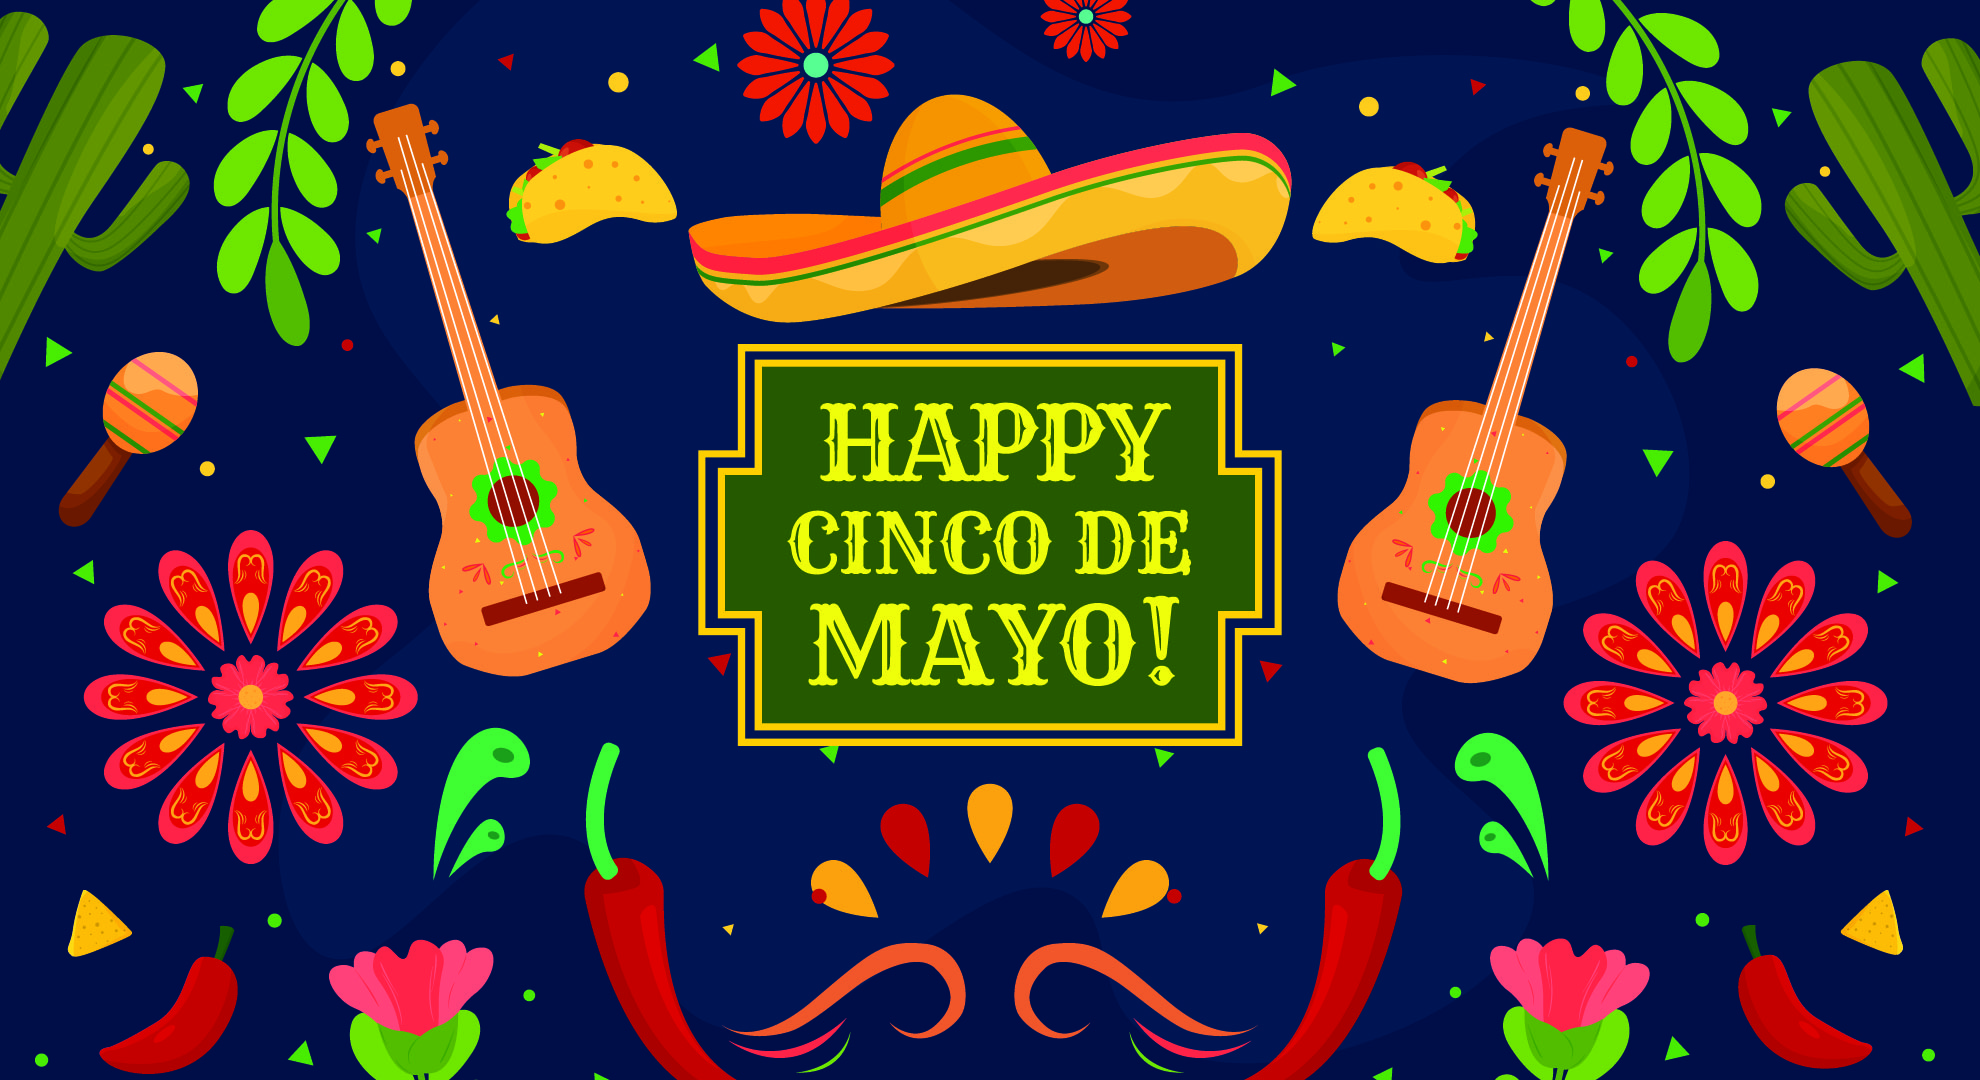 Happy Cinco De Mayo!